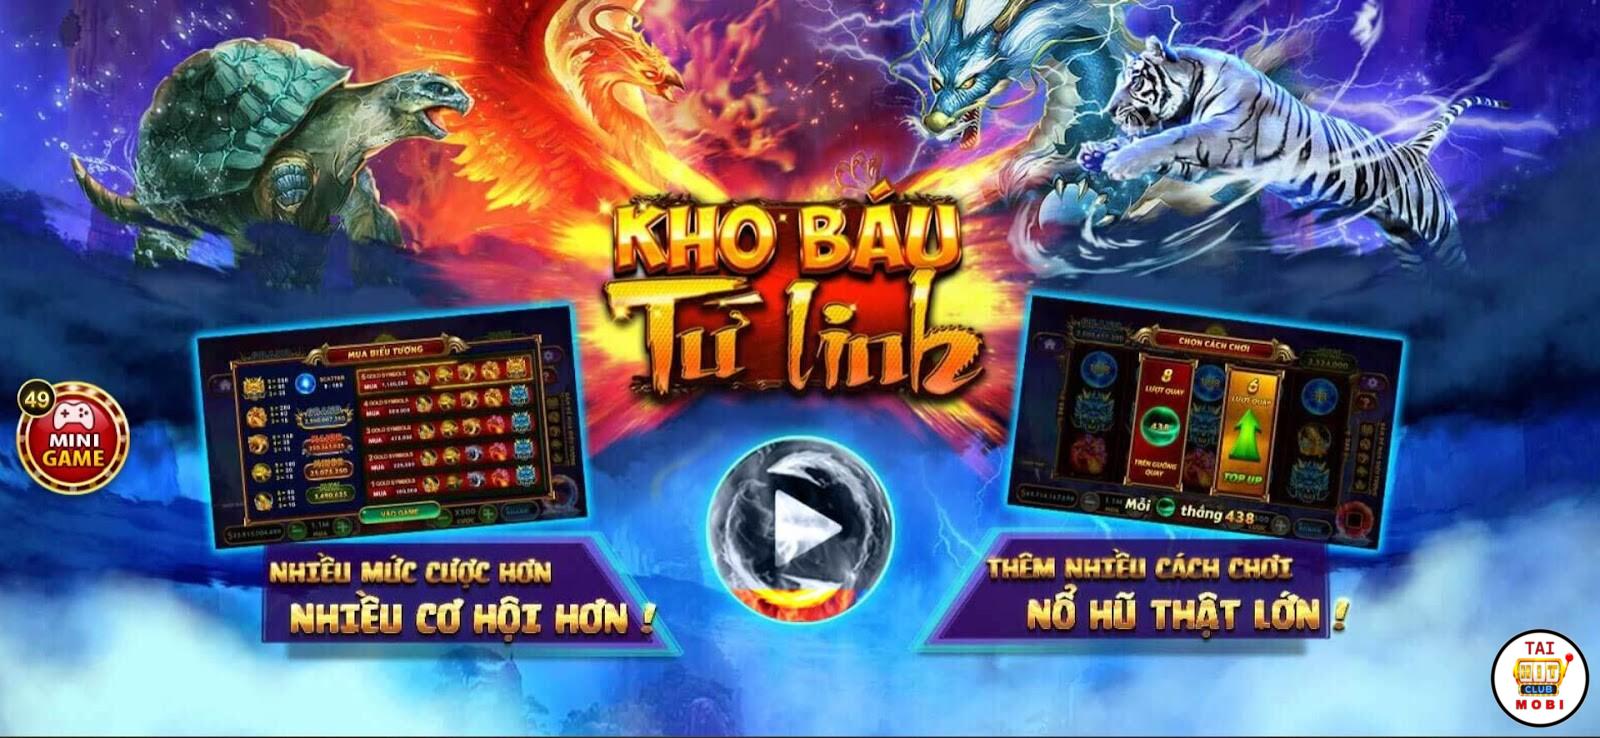 Giới thiệu sơ lược game Kho Báu Tứ Linh tại sân cược Hitclub